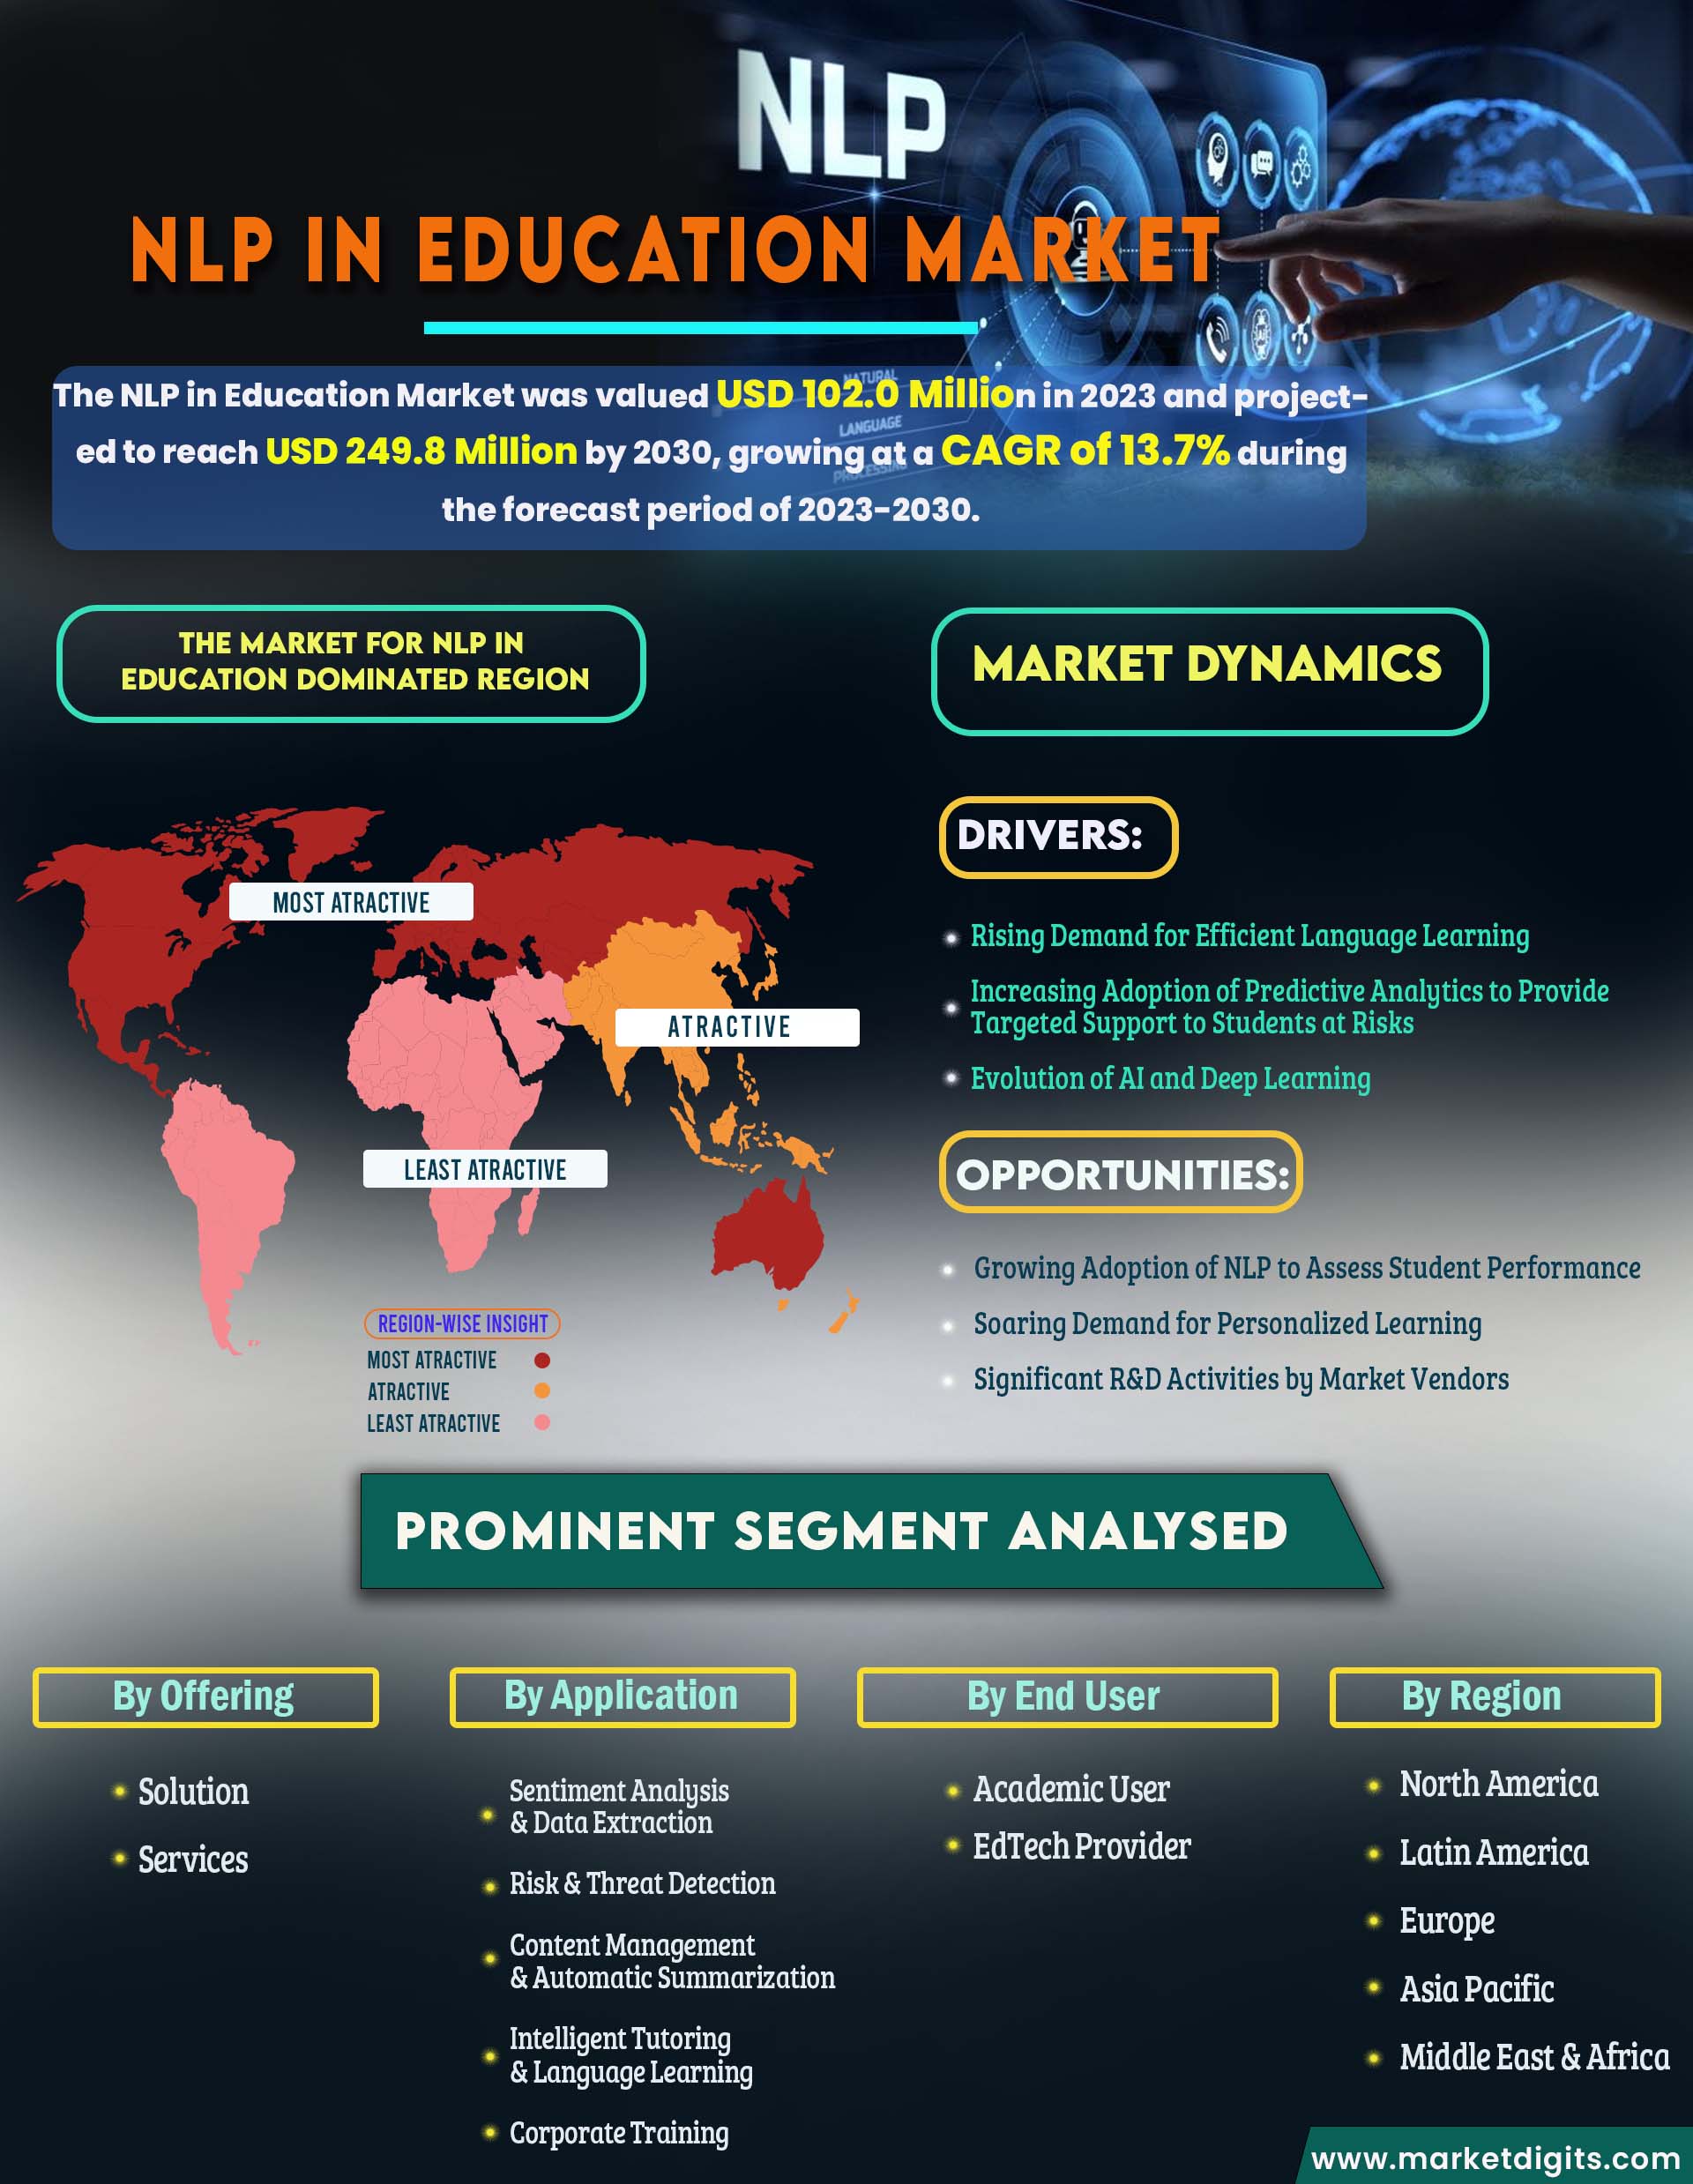 NLP in Education Market